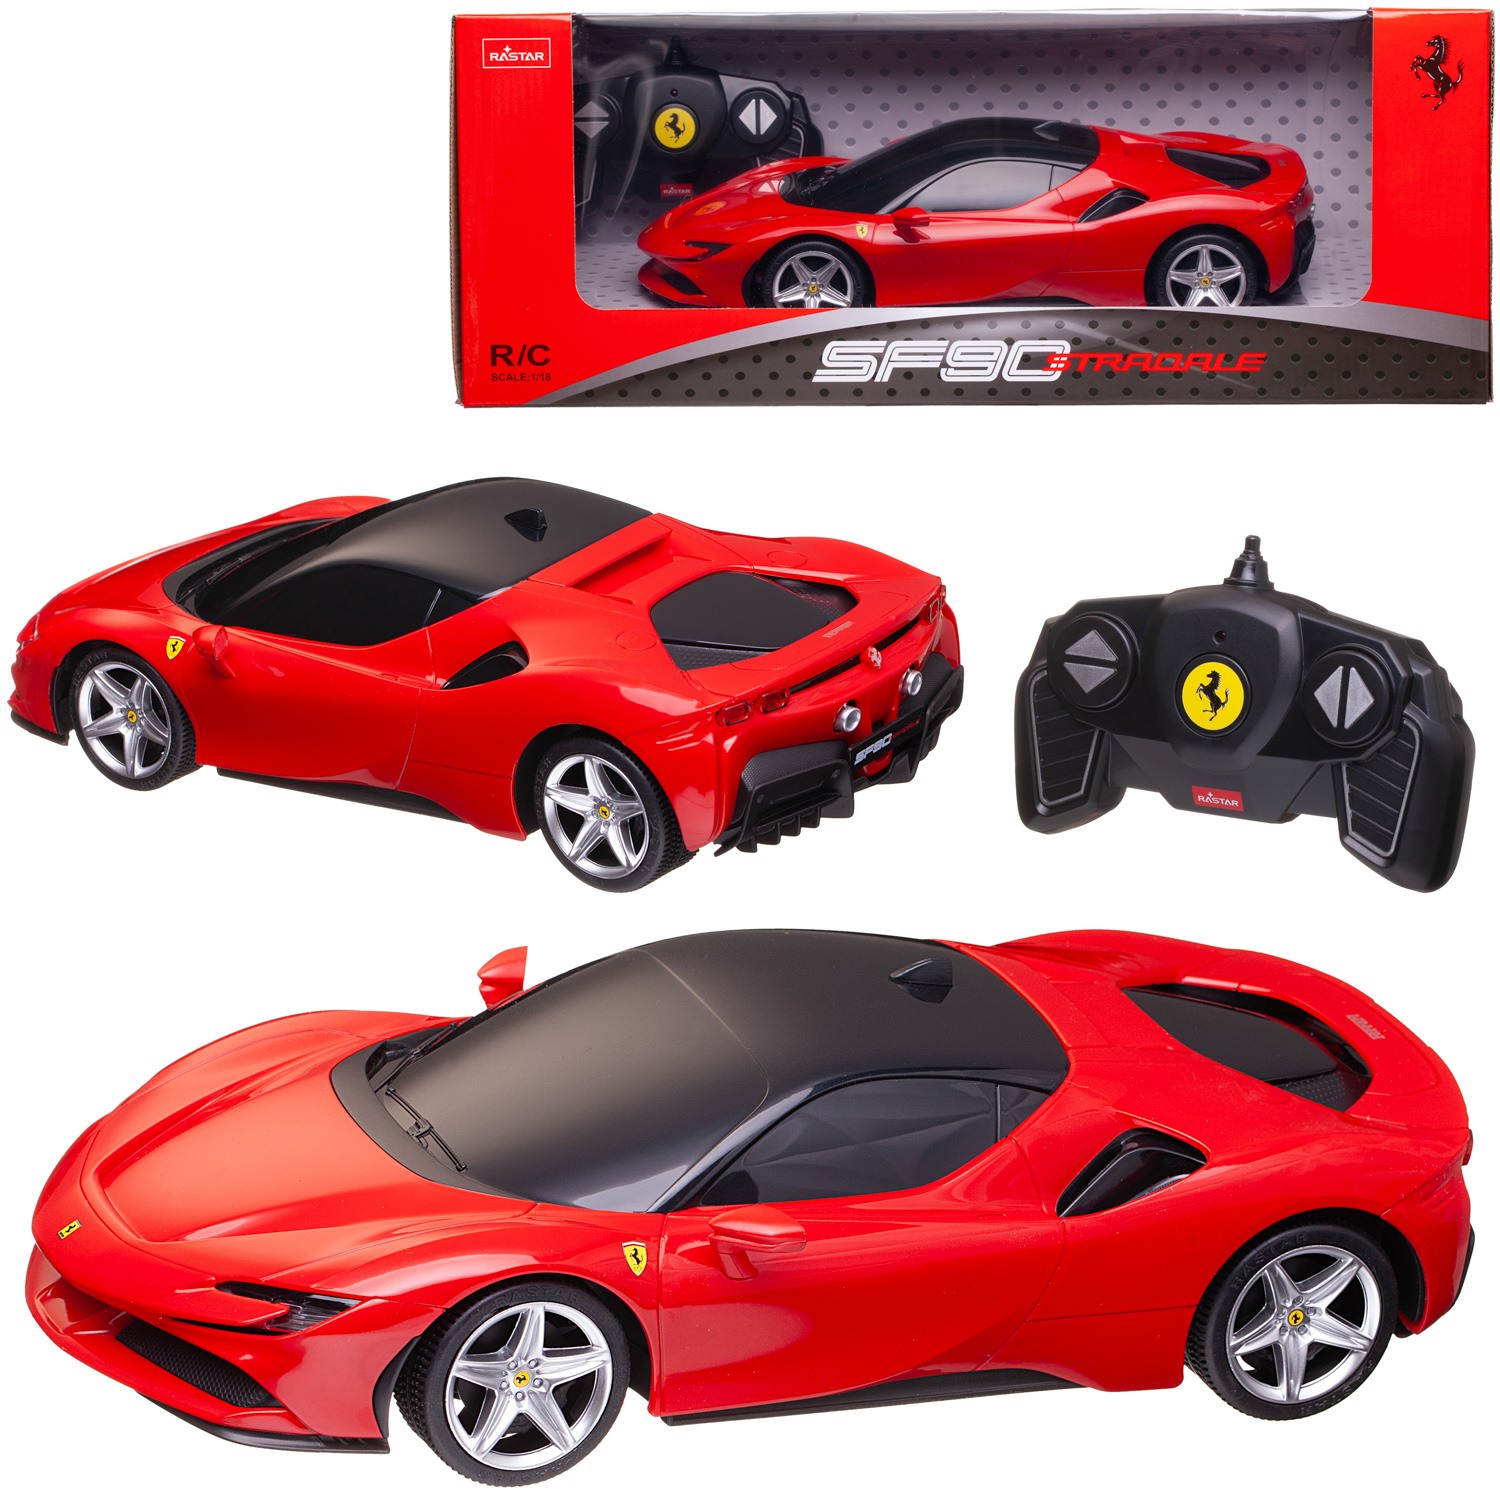 Машина р/у 1:18 Ferrari SF90 Stradale 2,4G, цвет красный, фары светятся, 25.9*12.7*7 takara tomy tomica scale 1 62 ferrari sf90 stradale 120 alloy diecast metal car model vehicle toys gifts collections